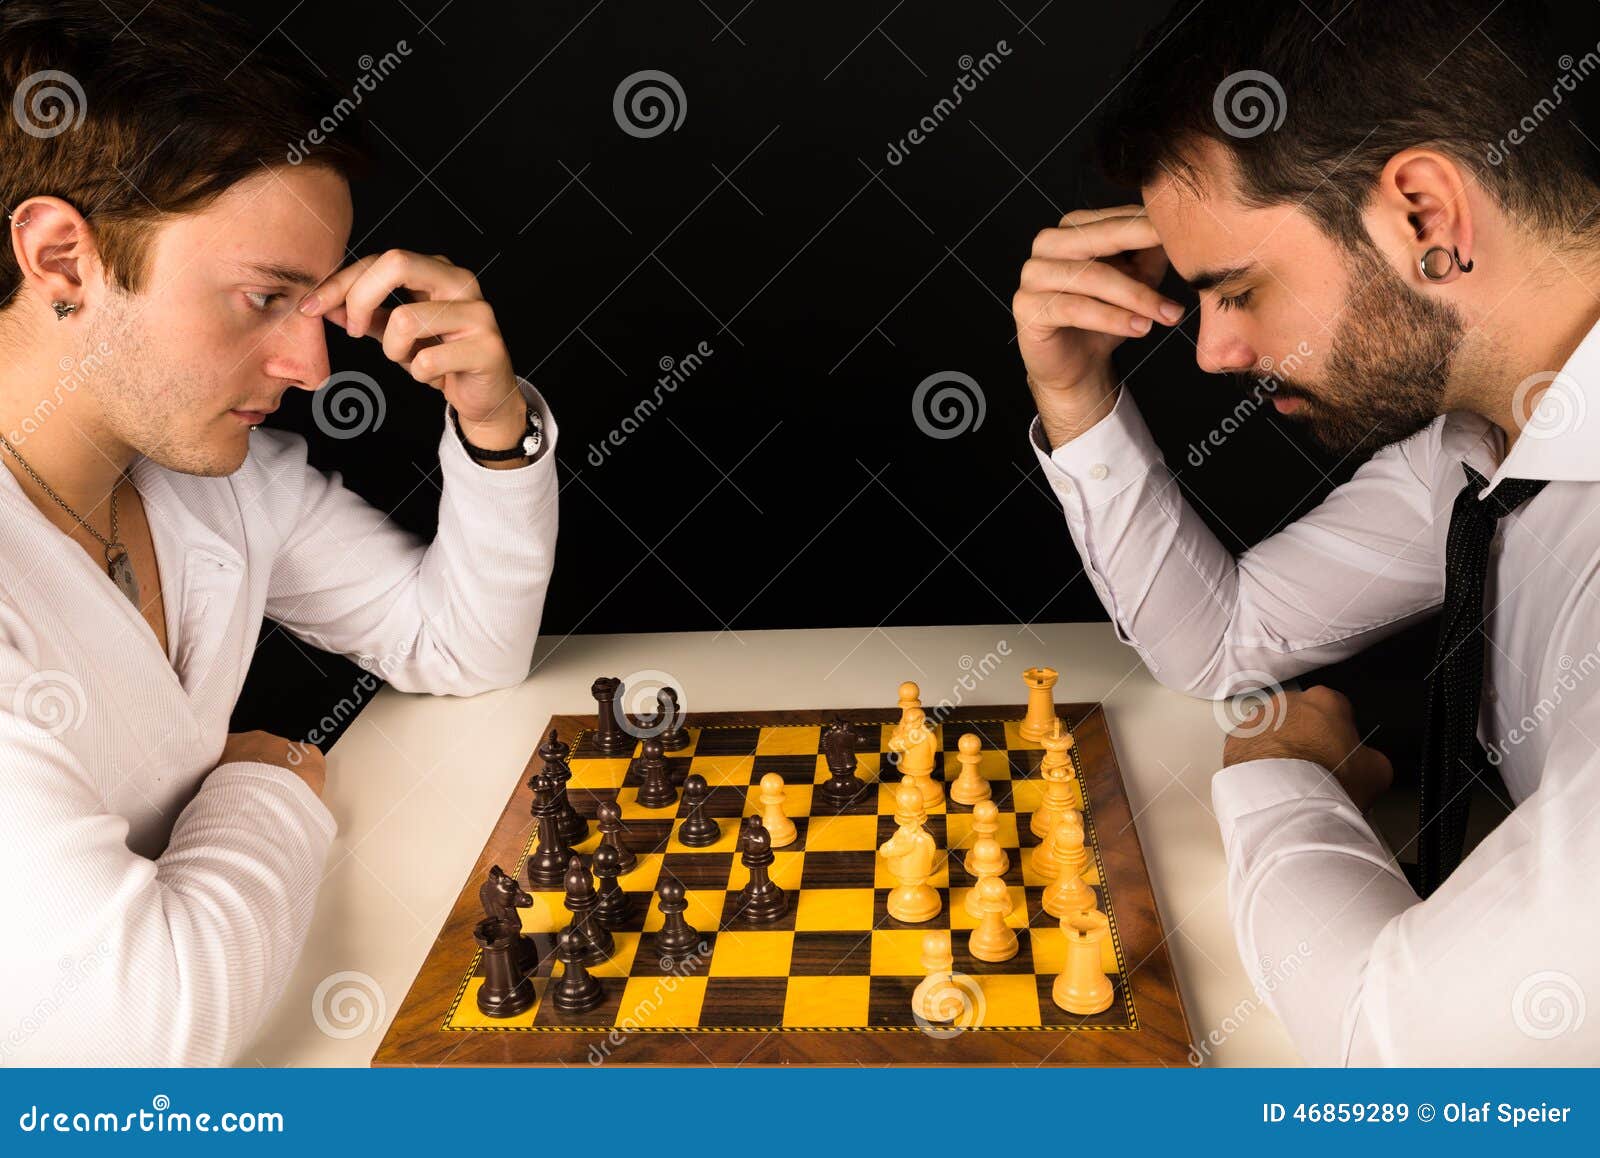 Как играть в шахматы с друзьями. Парень играющий в шахматы. Увлекается игрой в шахматы. Мужчина за игрой в шахматы. Мужчина с шахматами.